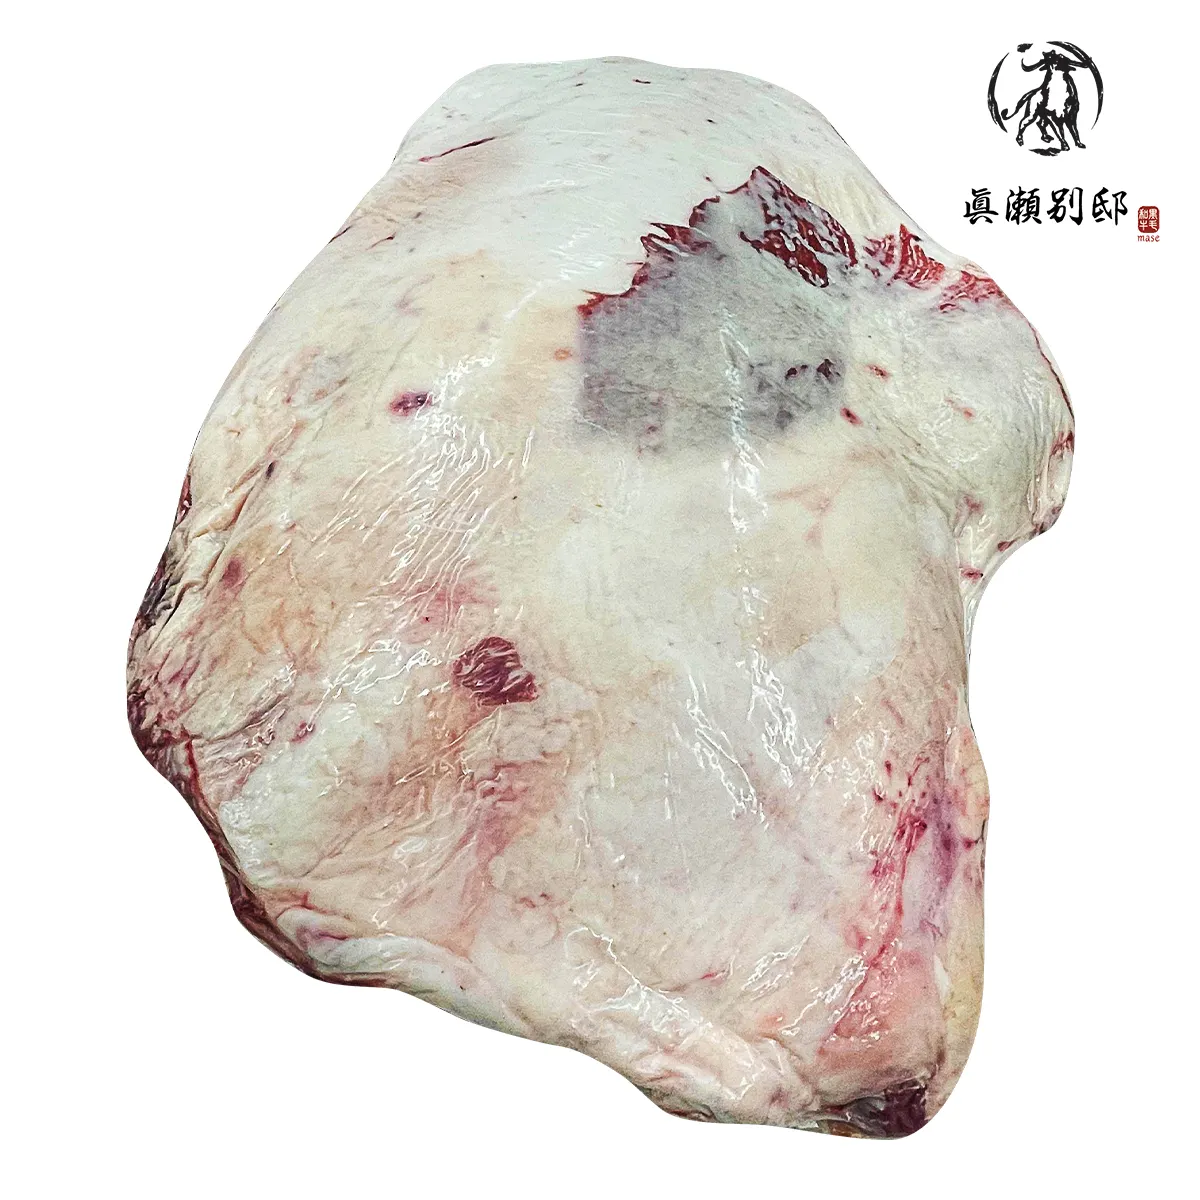 Venta caliente Japón No Halal Beaf Shoulder Clod Venta al por mayor Carne congelada